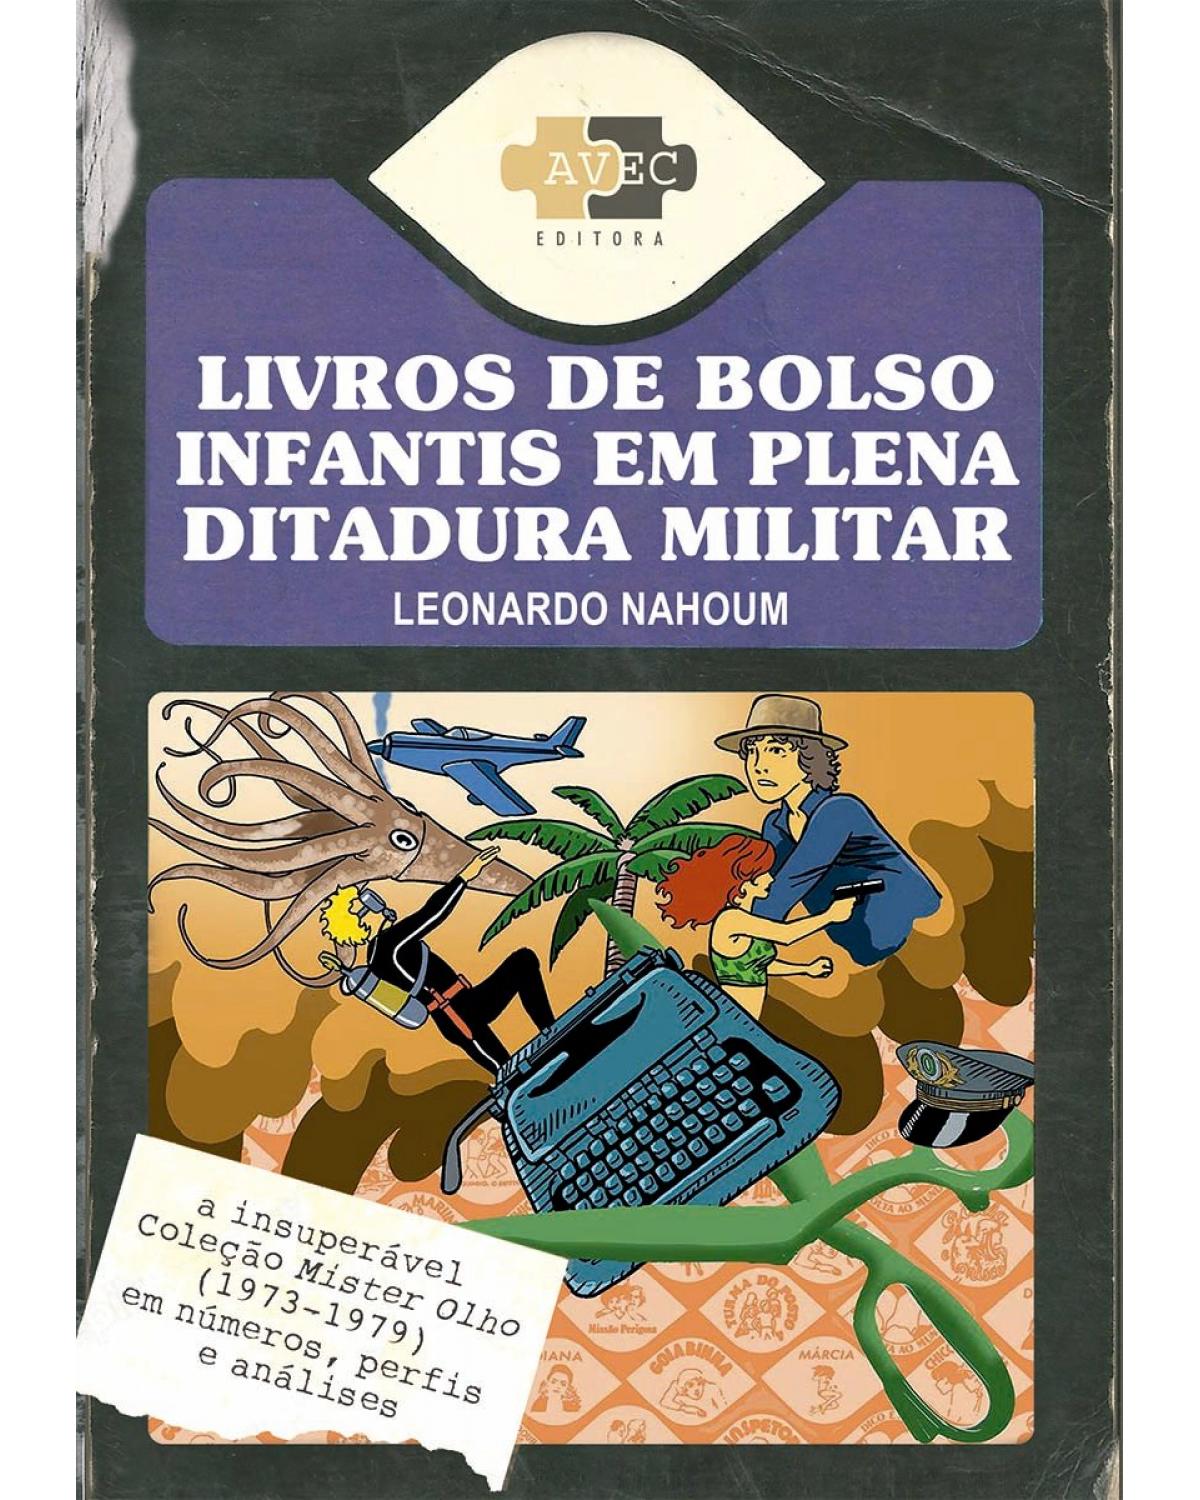 Livros de bolso infantis em plena ditadura militar - a insuperável Coleção Mister Olho (1973-1979) em números, perfis e análises - 1ª Edição | 2022